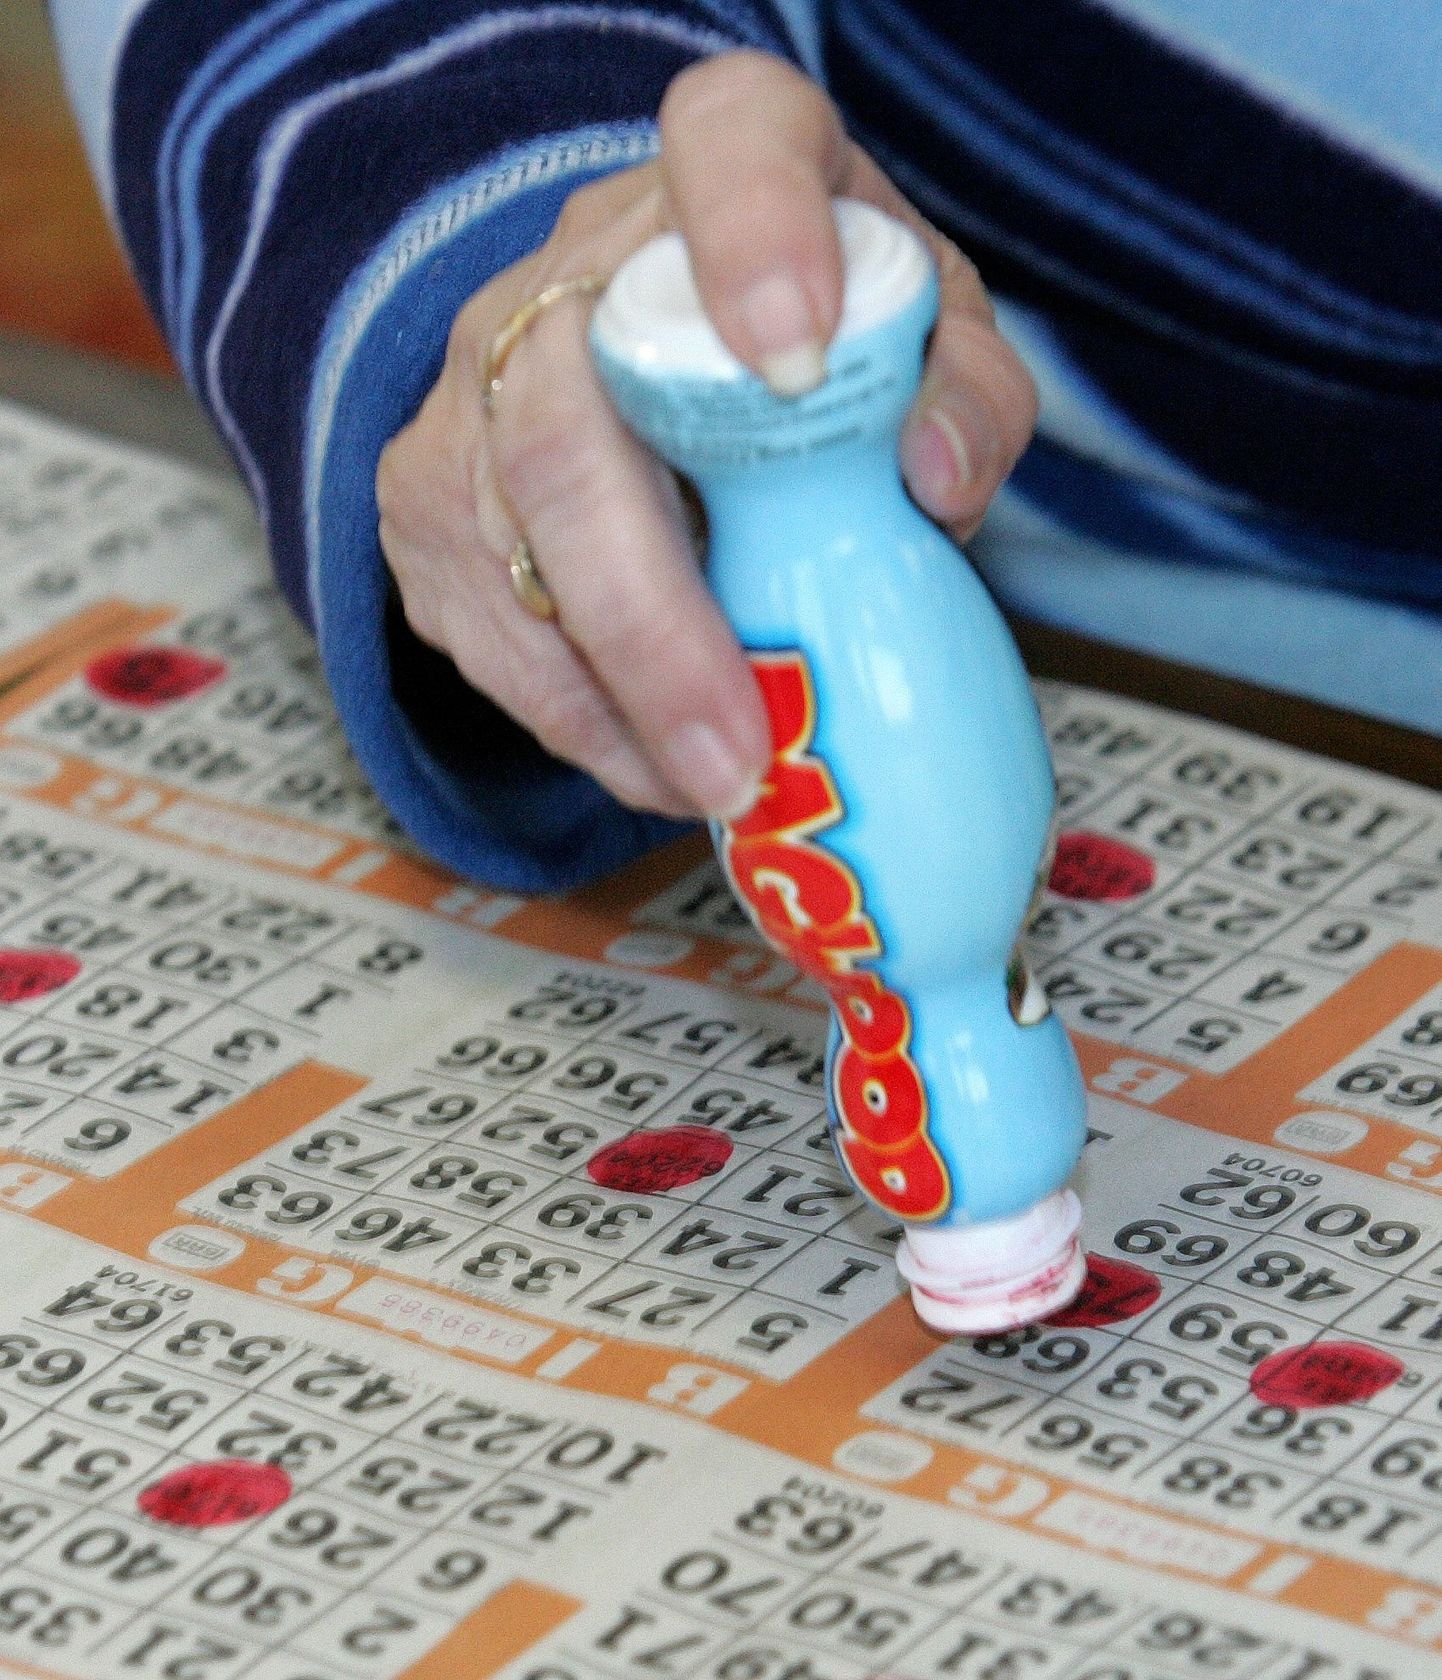 Bingo mängimine on sarnaselt muudele õnnemängudele Türgis keelatud